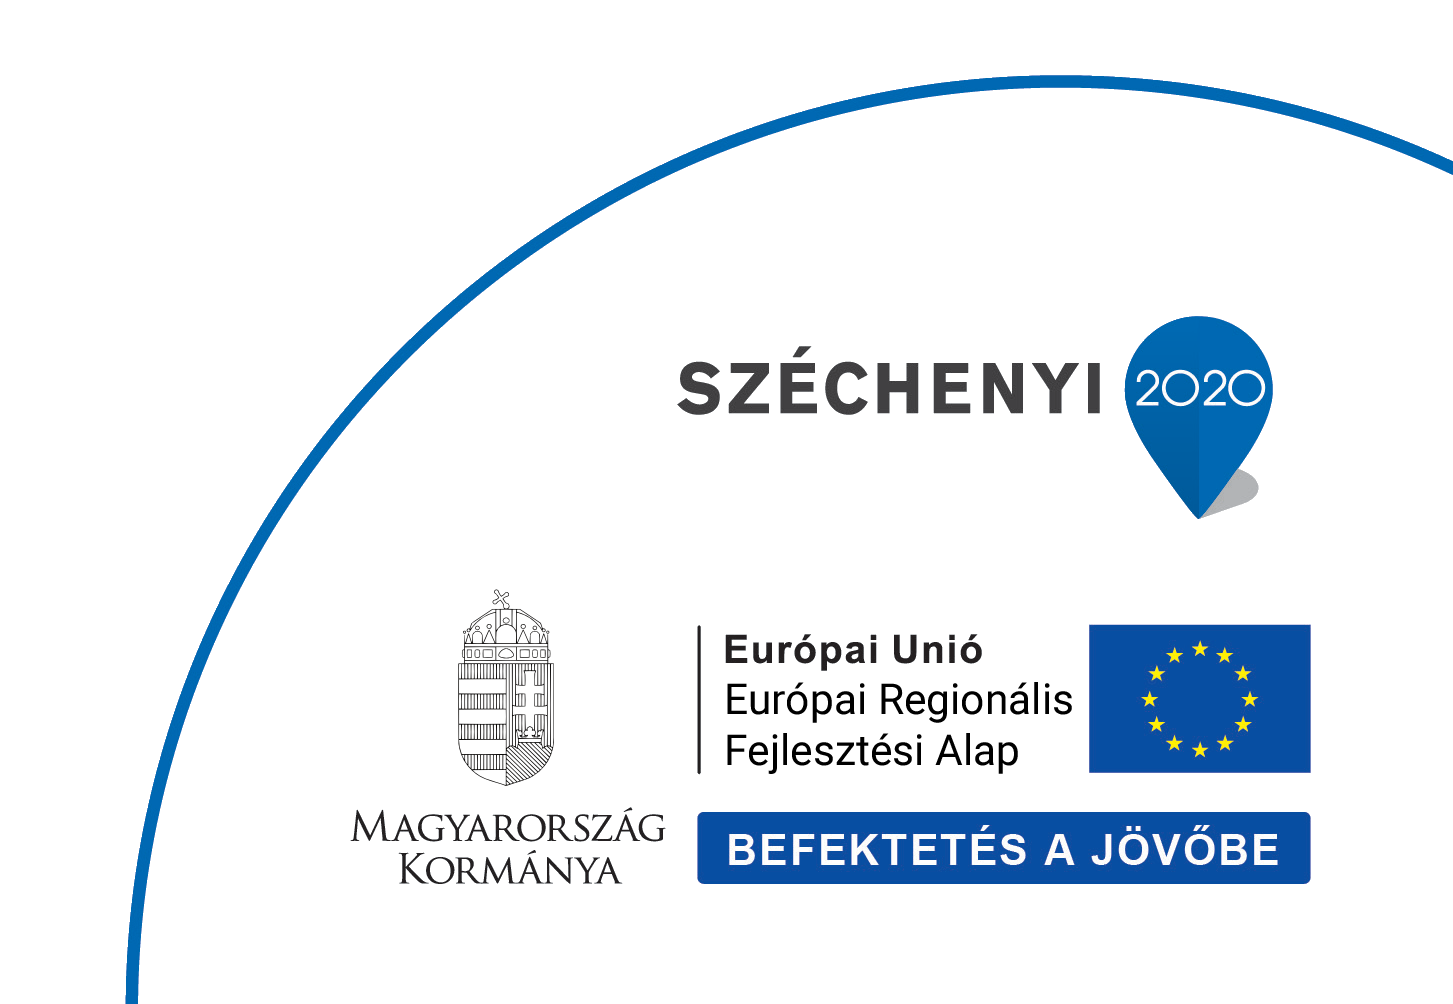 Befektetés a jövőbe - Széchenyi 2020